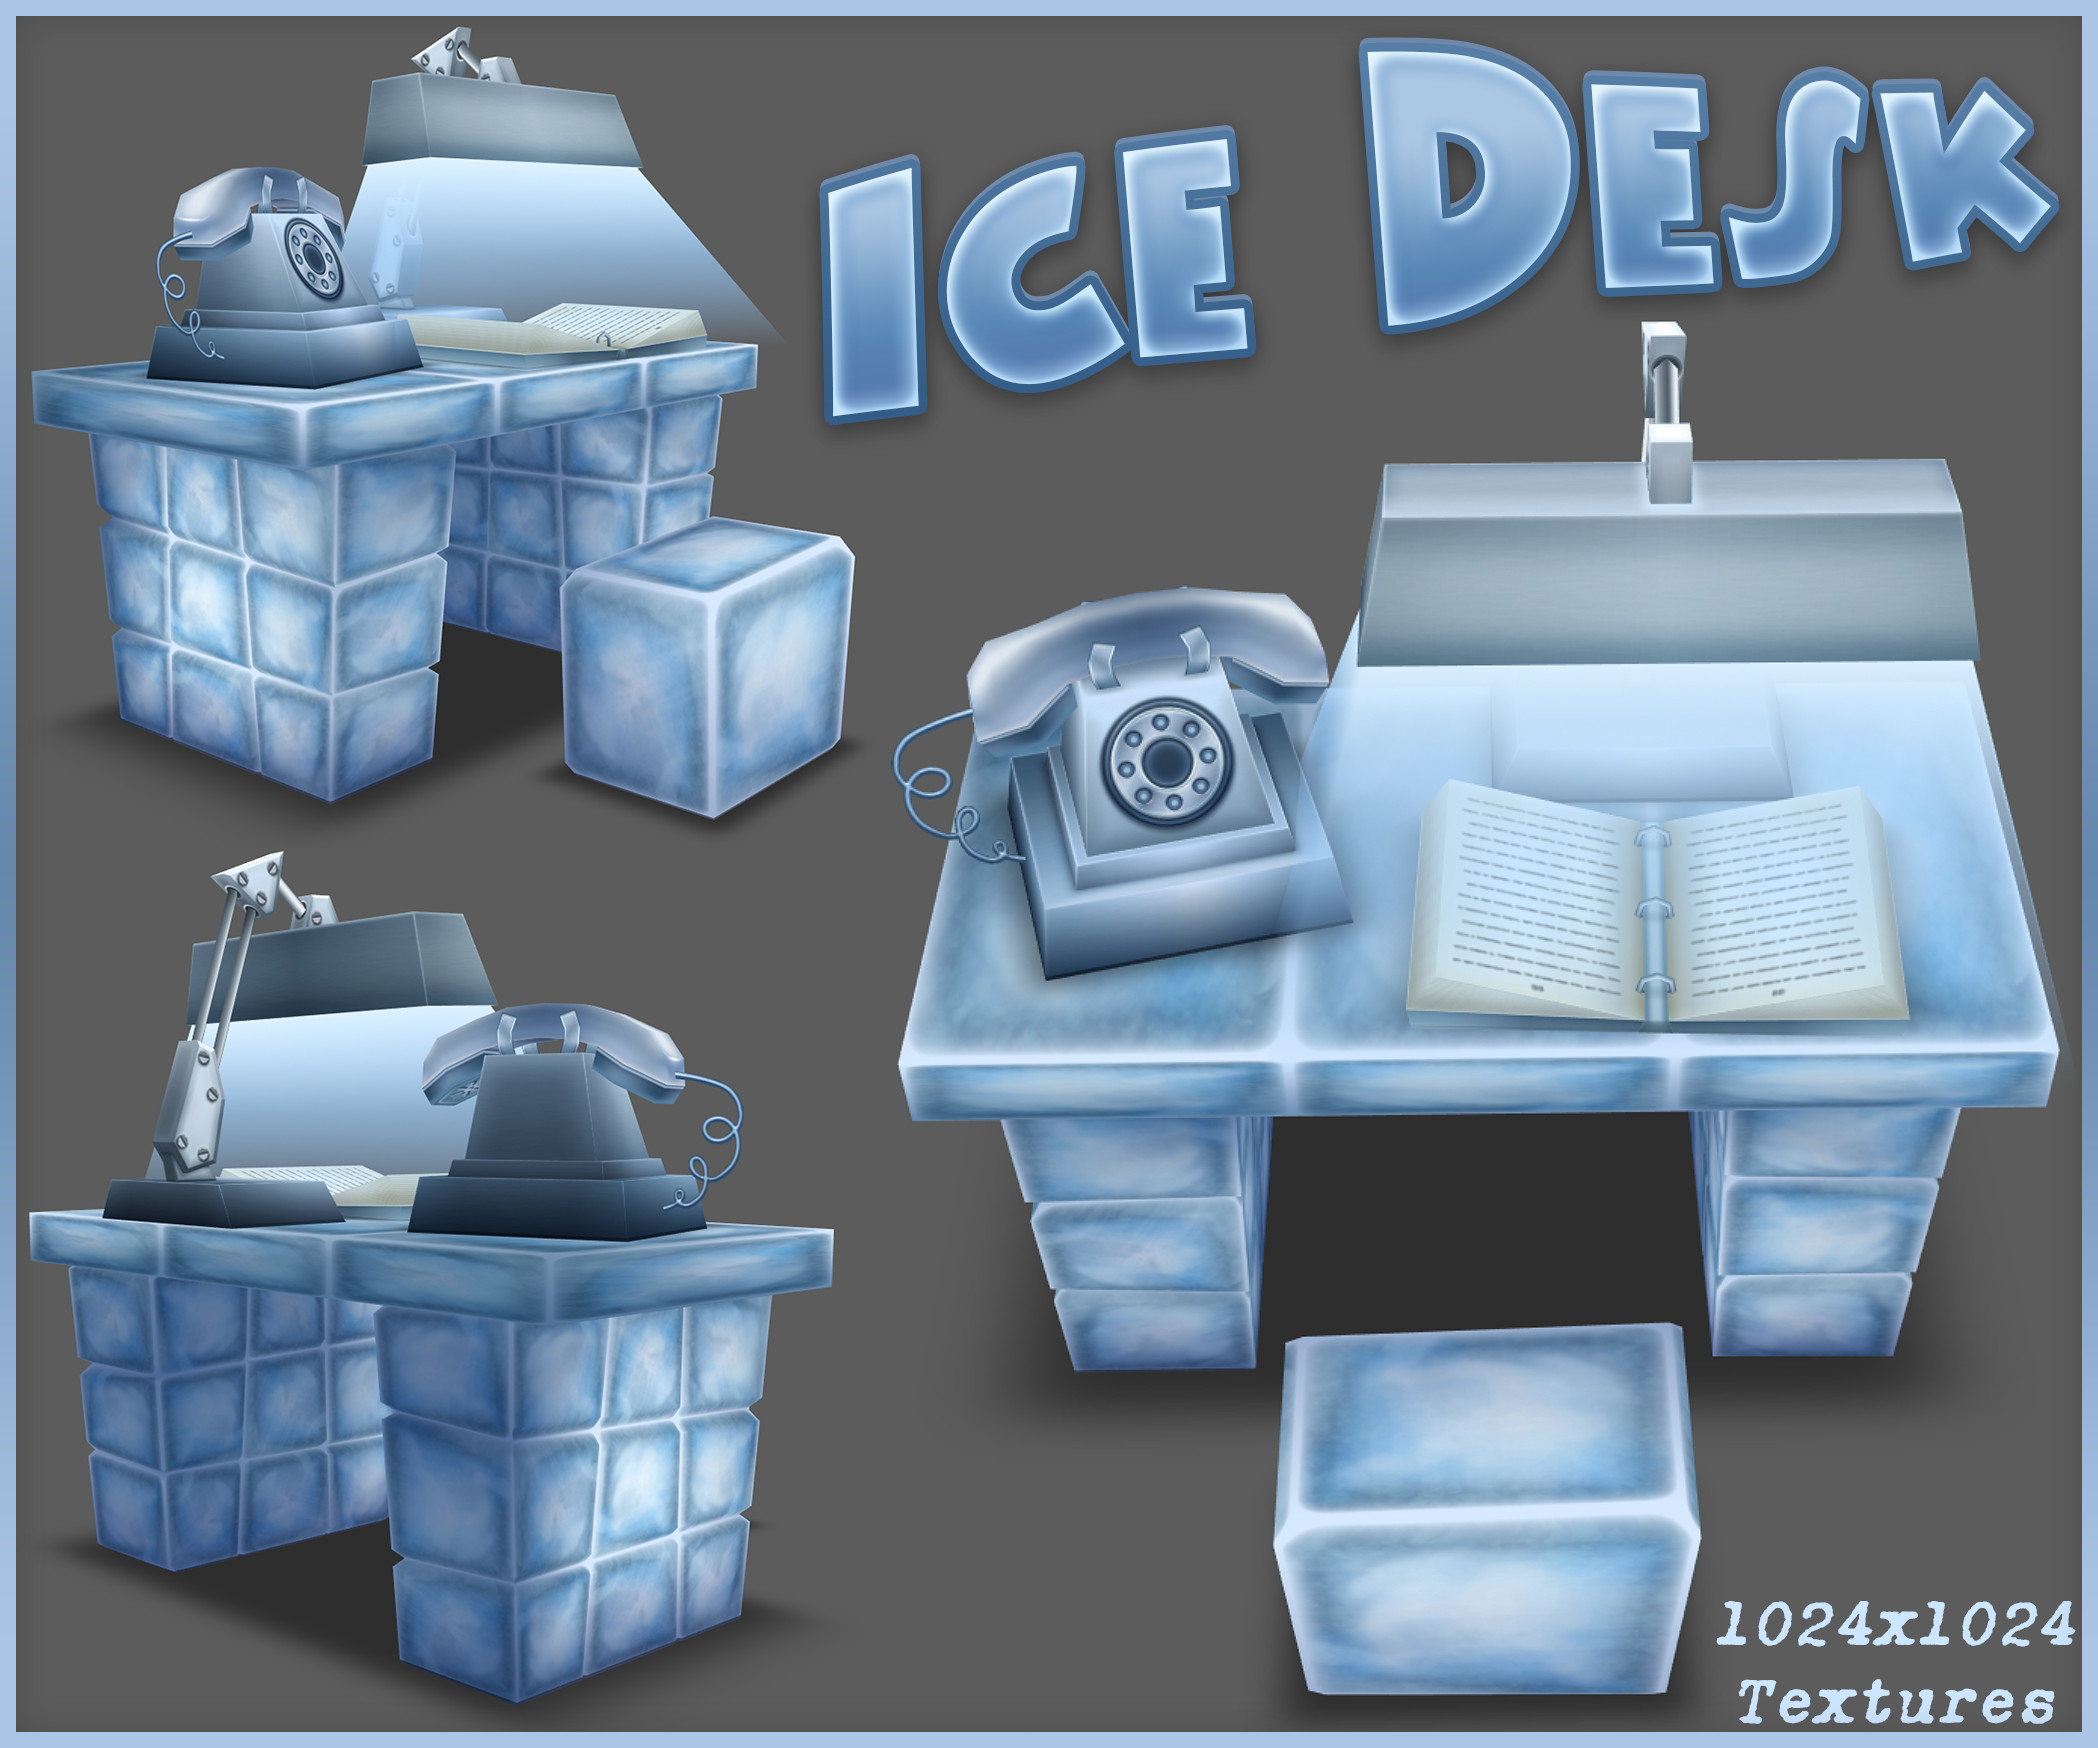 Ice Desk